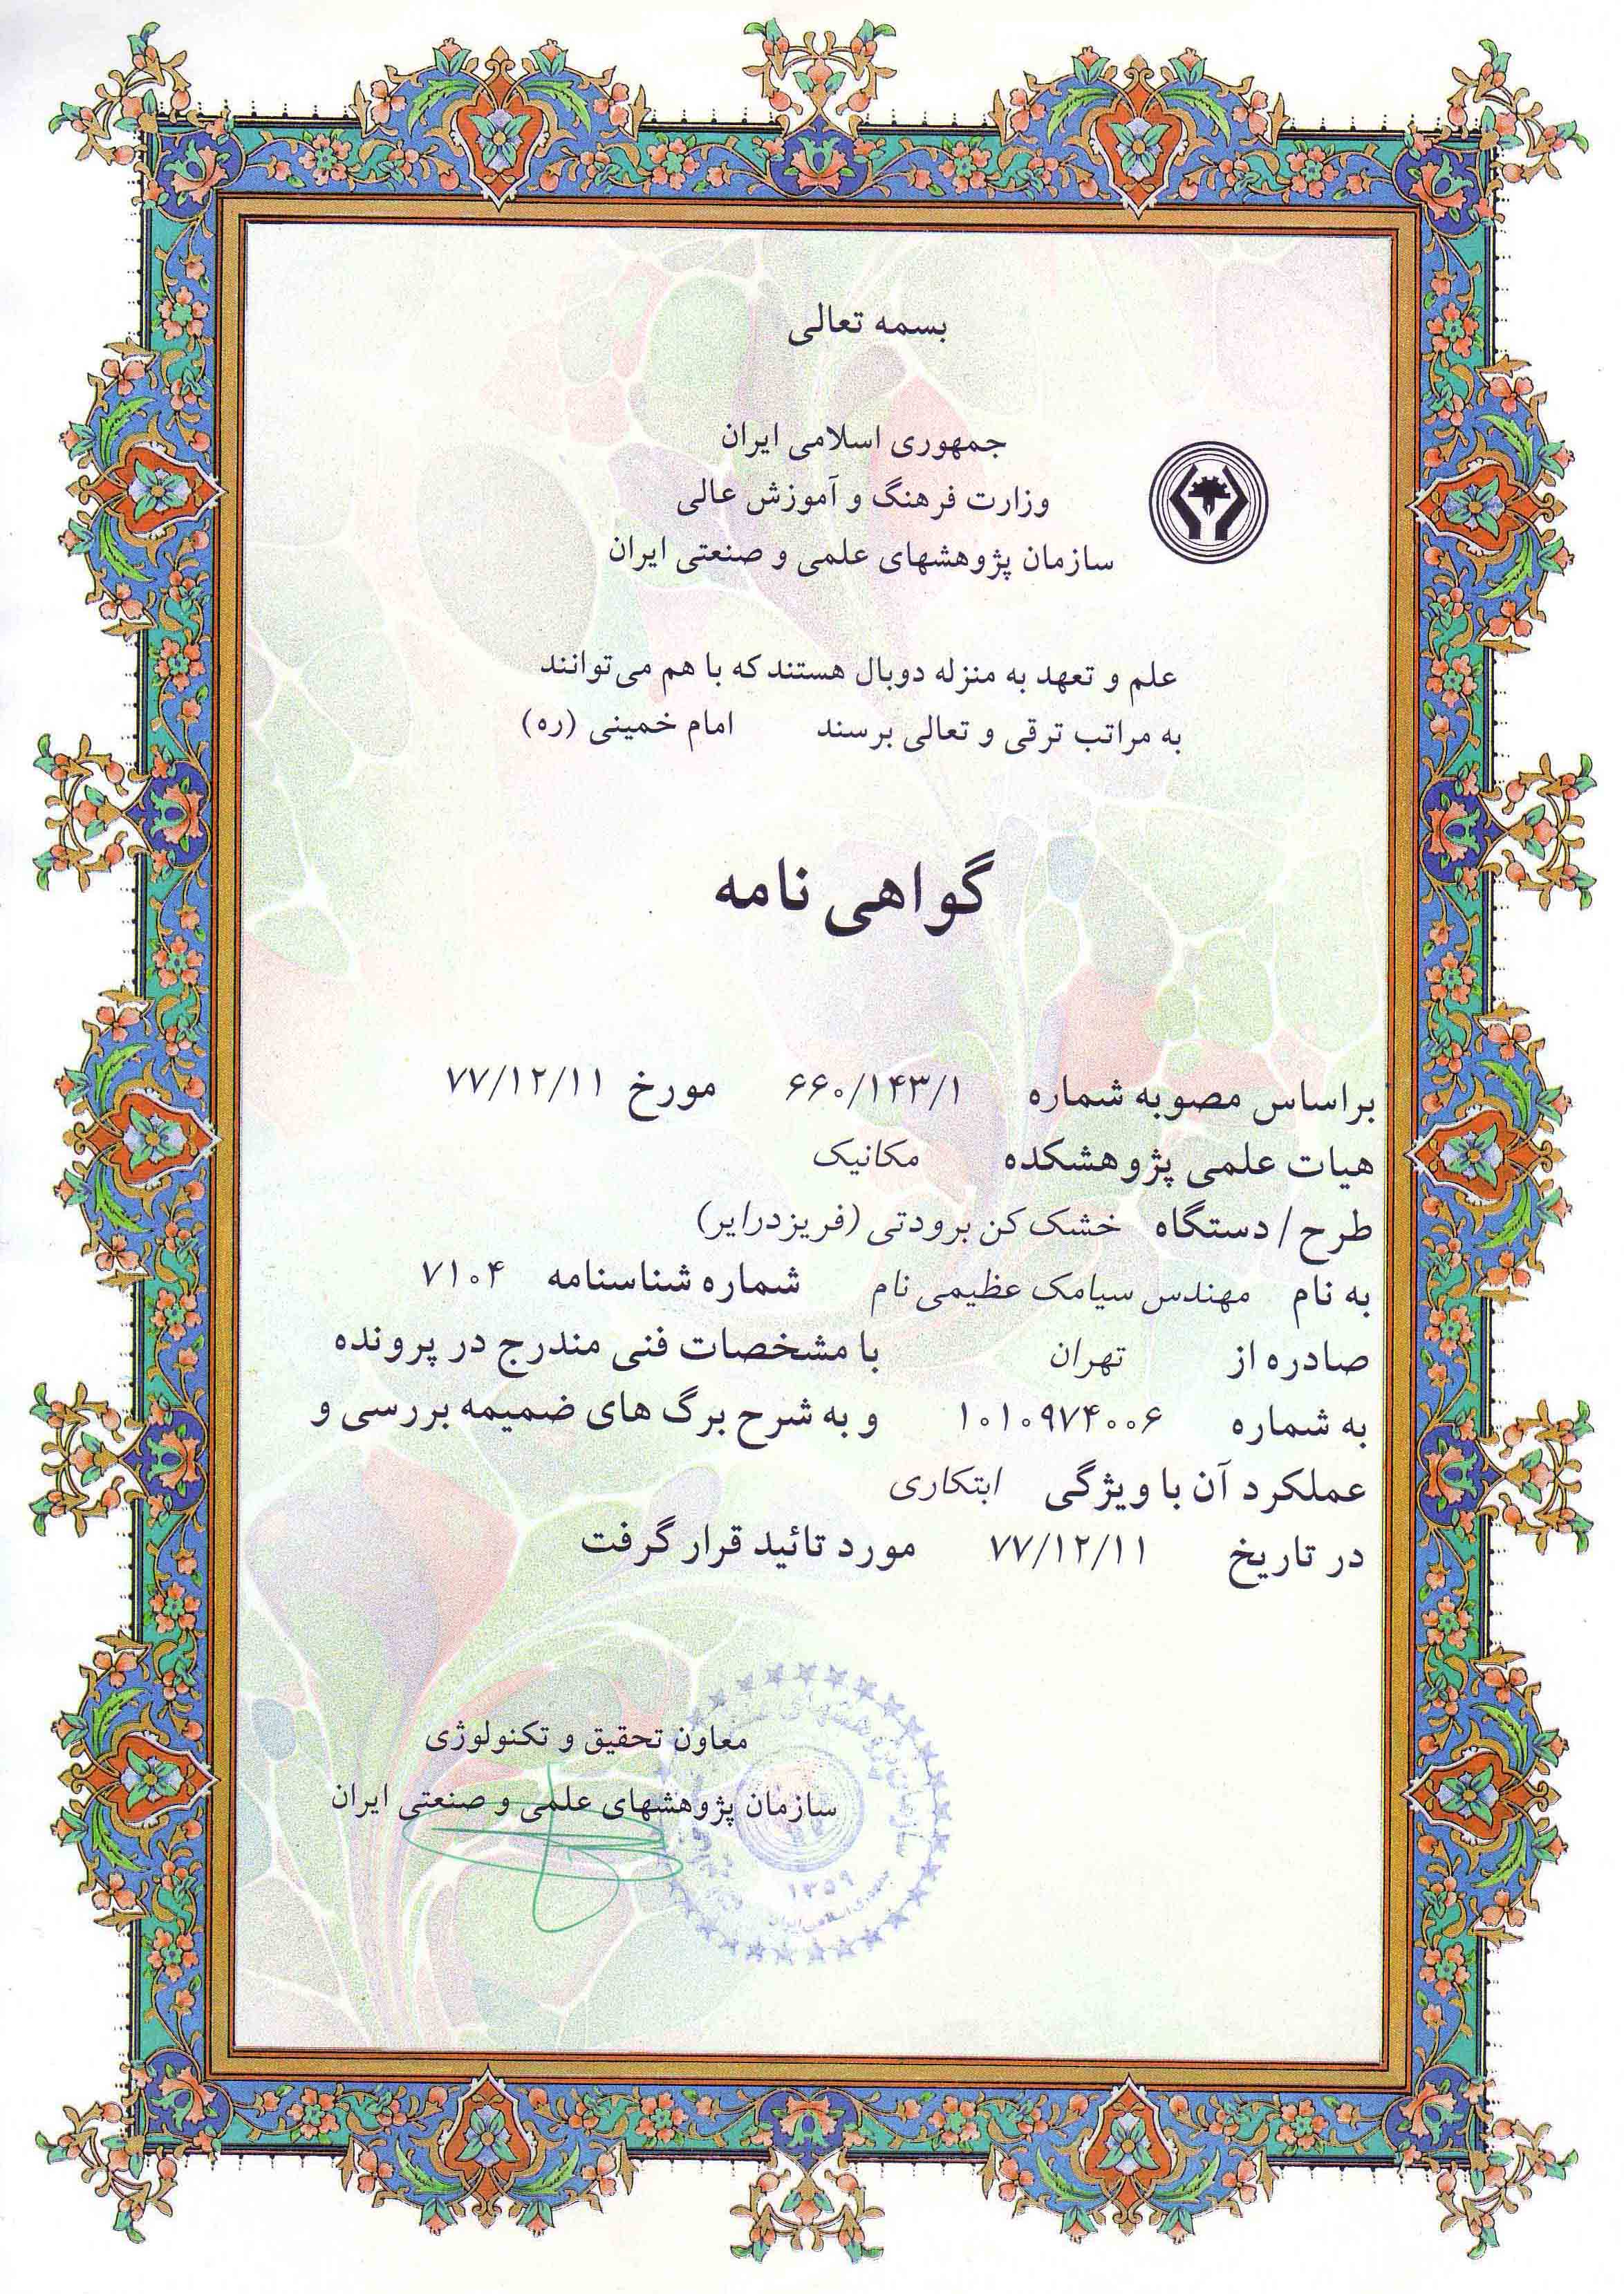 تاییدیه ی طراحی و ساخت خشک کن سرمایشی از سازمان پژوهشهای علمی و صنعتی ایران در سال ۱۳۷۷